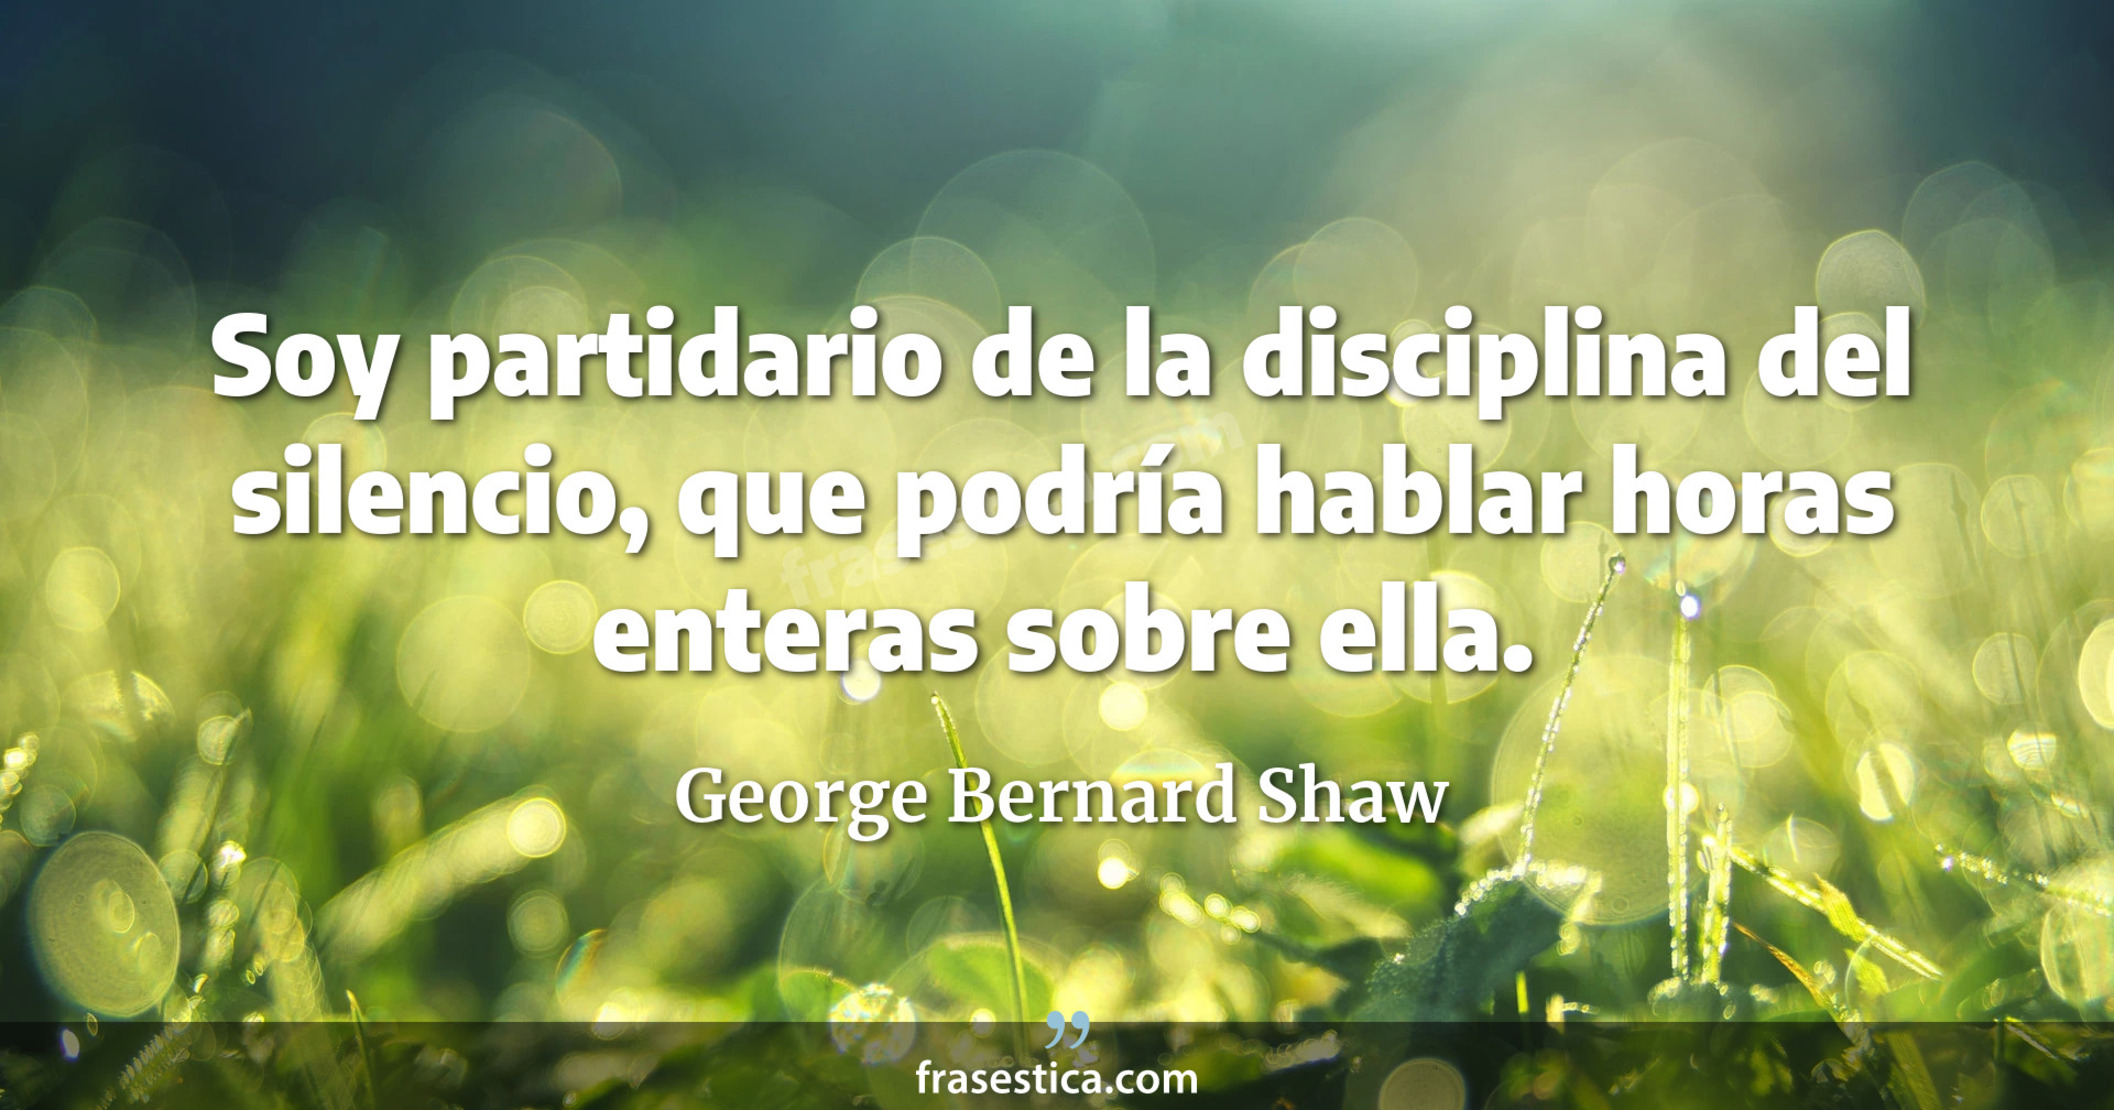 Soy partidario de la disciplina del silencio, que podría hablar horas enteras sobre ella. - George Bernard Shaw